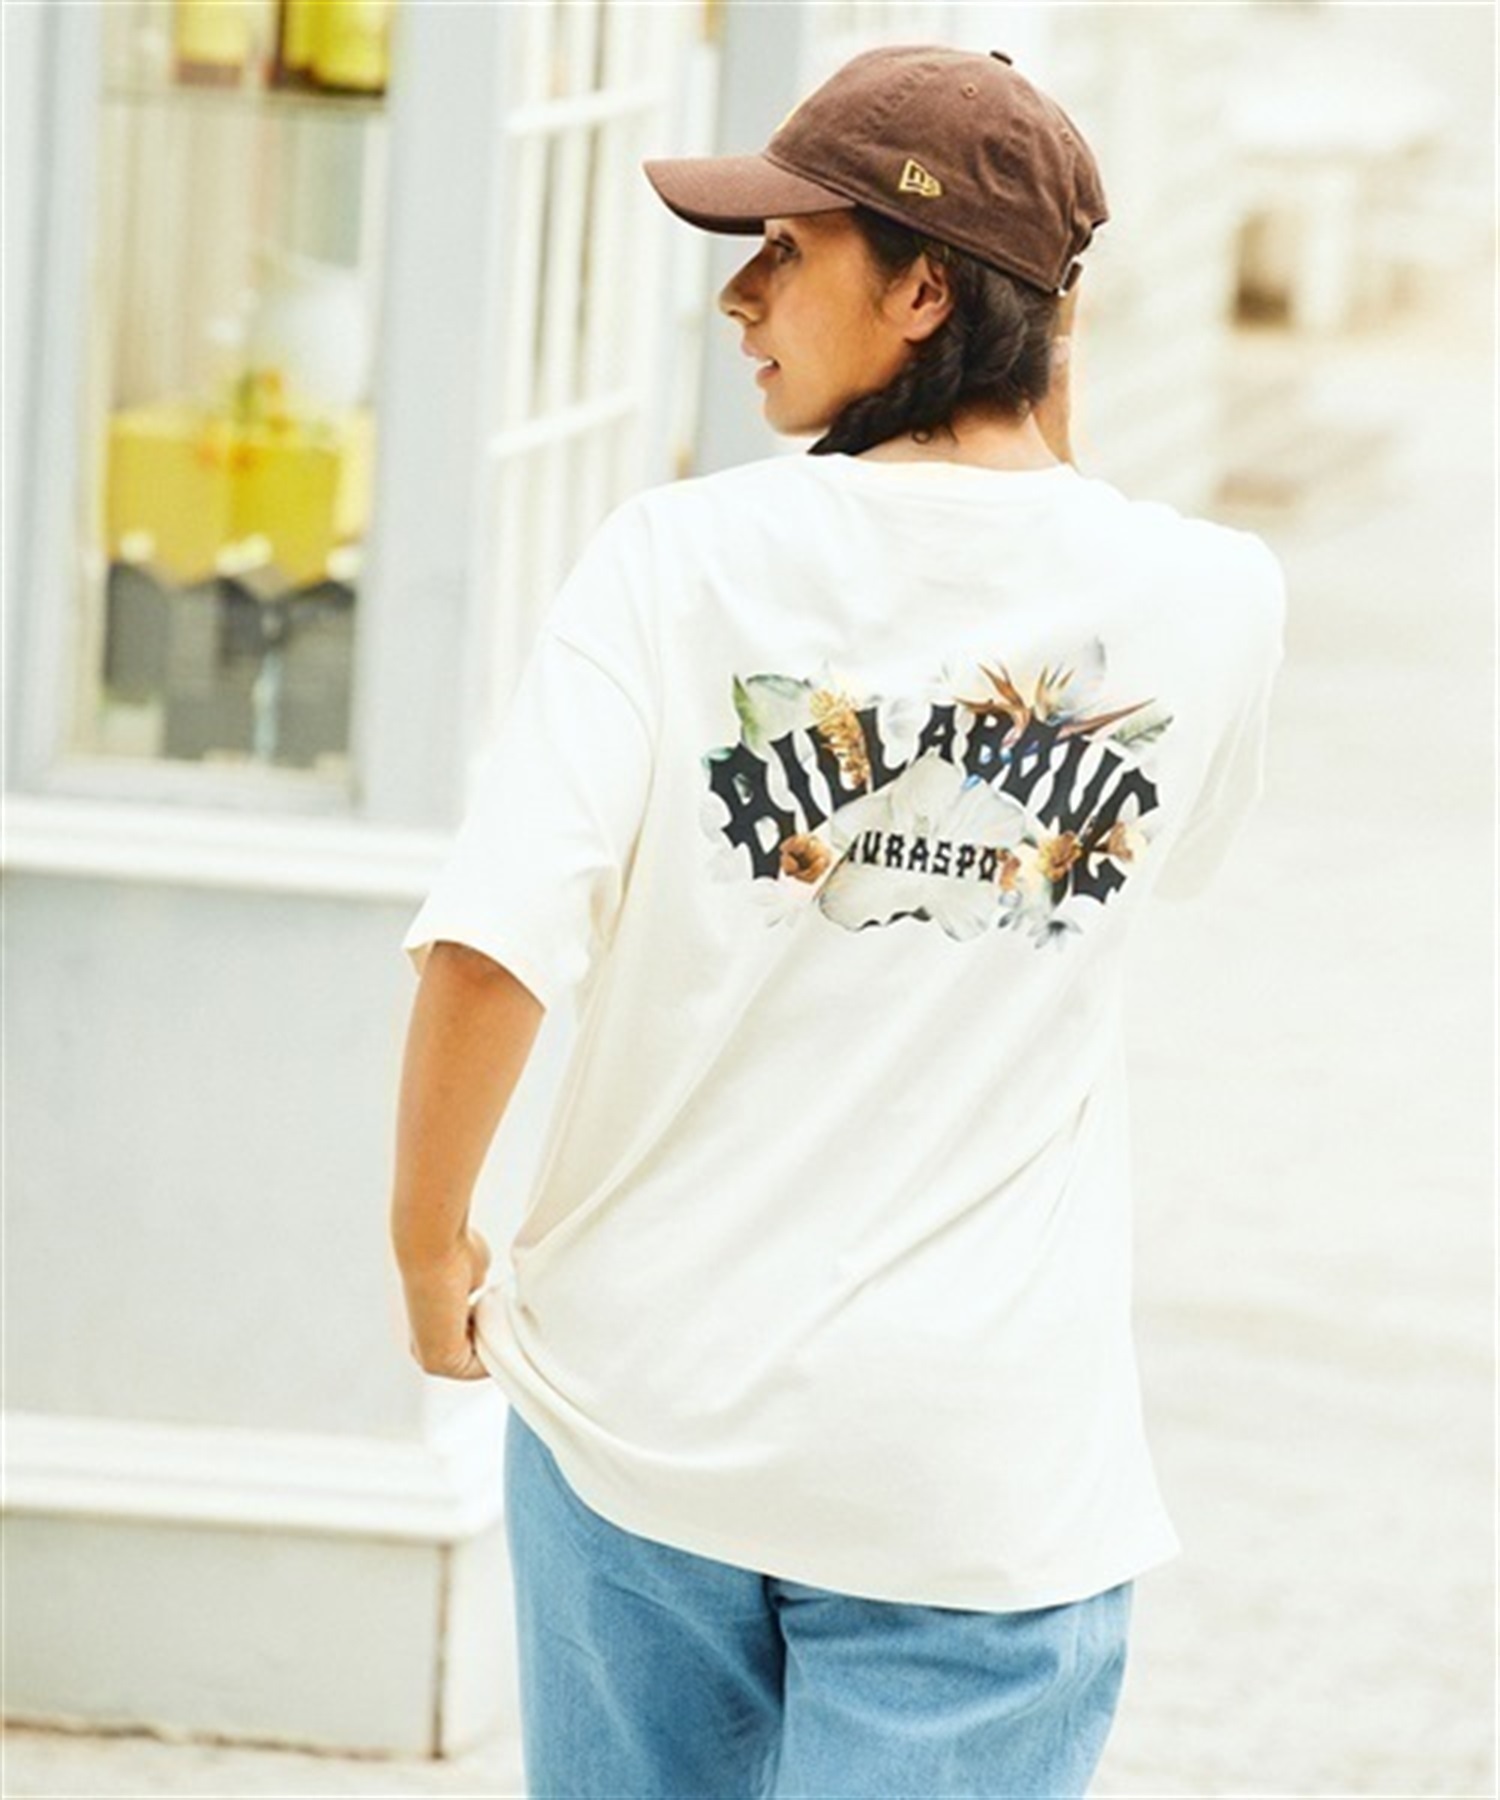 ムラサキスポーツ×BILLABONG/ビラボン×KAMEA HADAR/カメア・ハーダー ユニフォームプロジェクト BD013-245 半袖Tシャツ レディース(SPE-M)